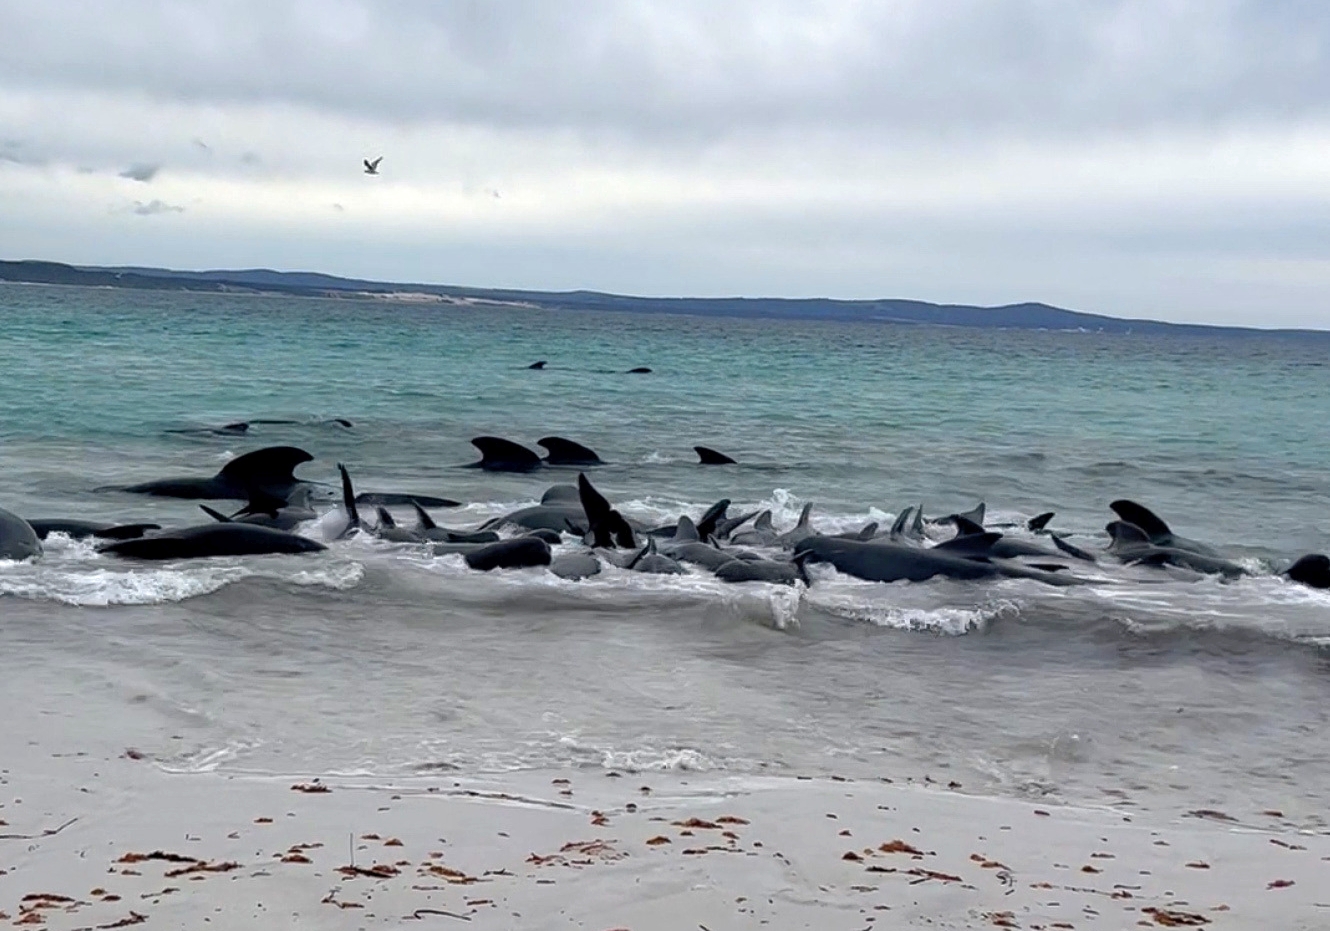 Αυστραλία: Δεκάδες μαυροδέλφινα εξόκειλαν σε παραλία - Προσπάθεια διάσωσης